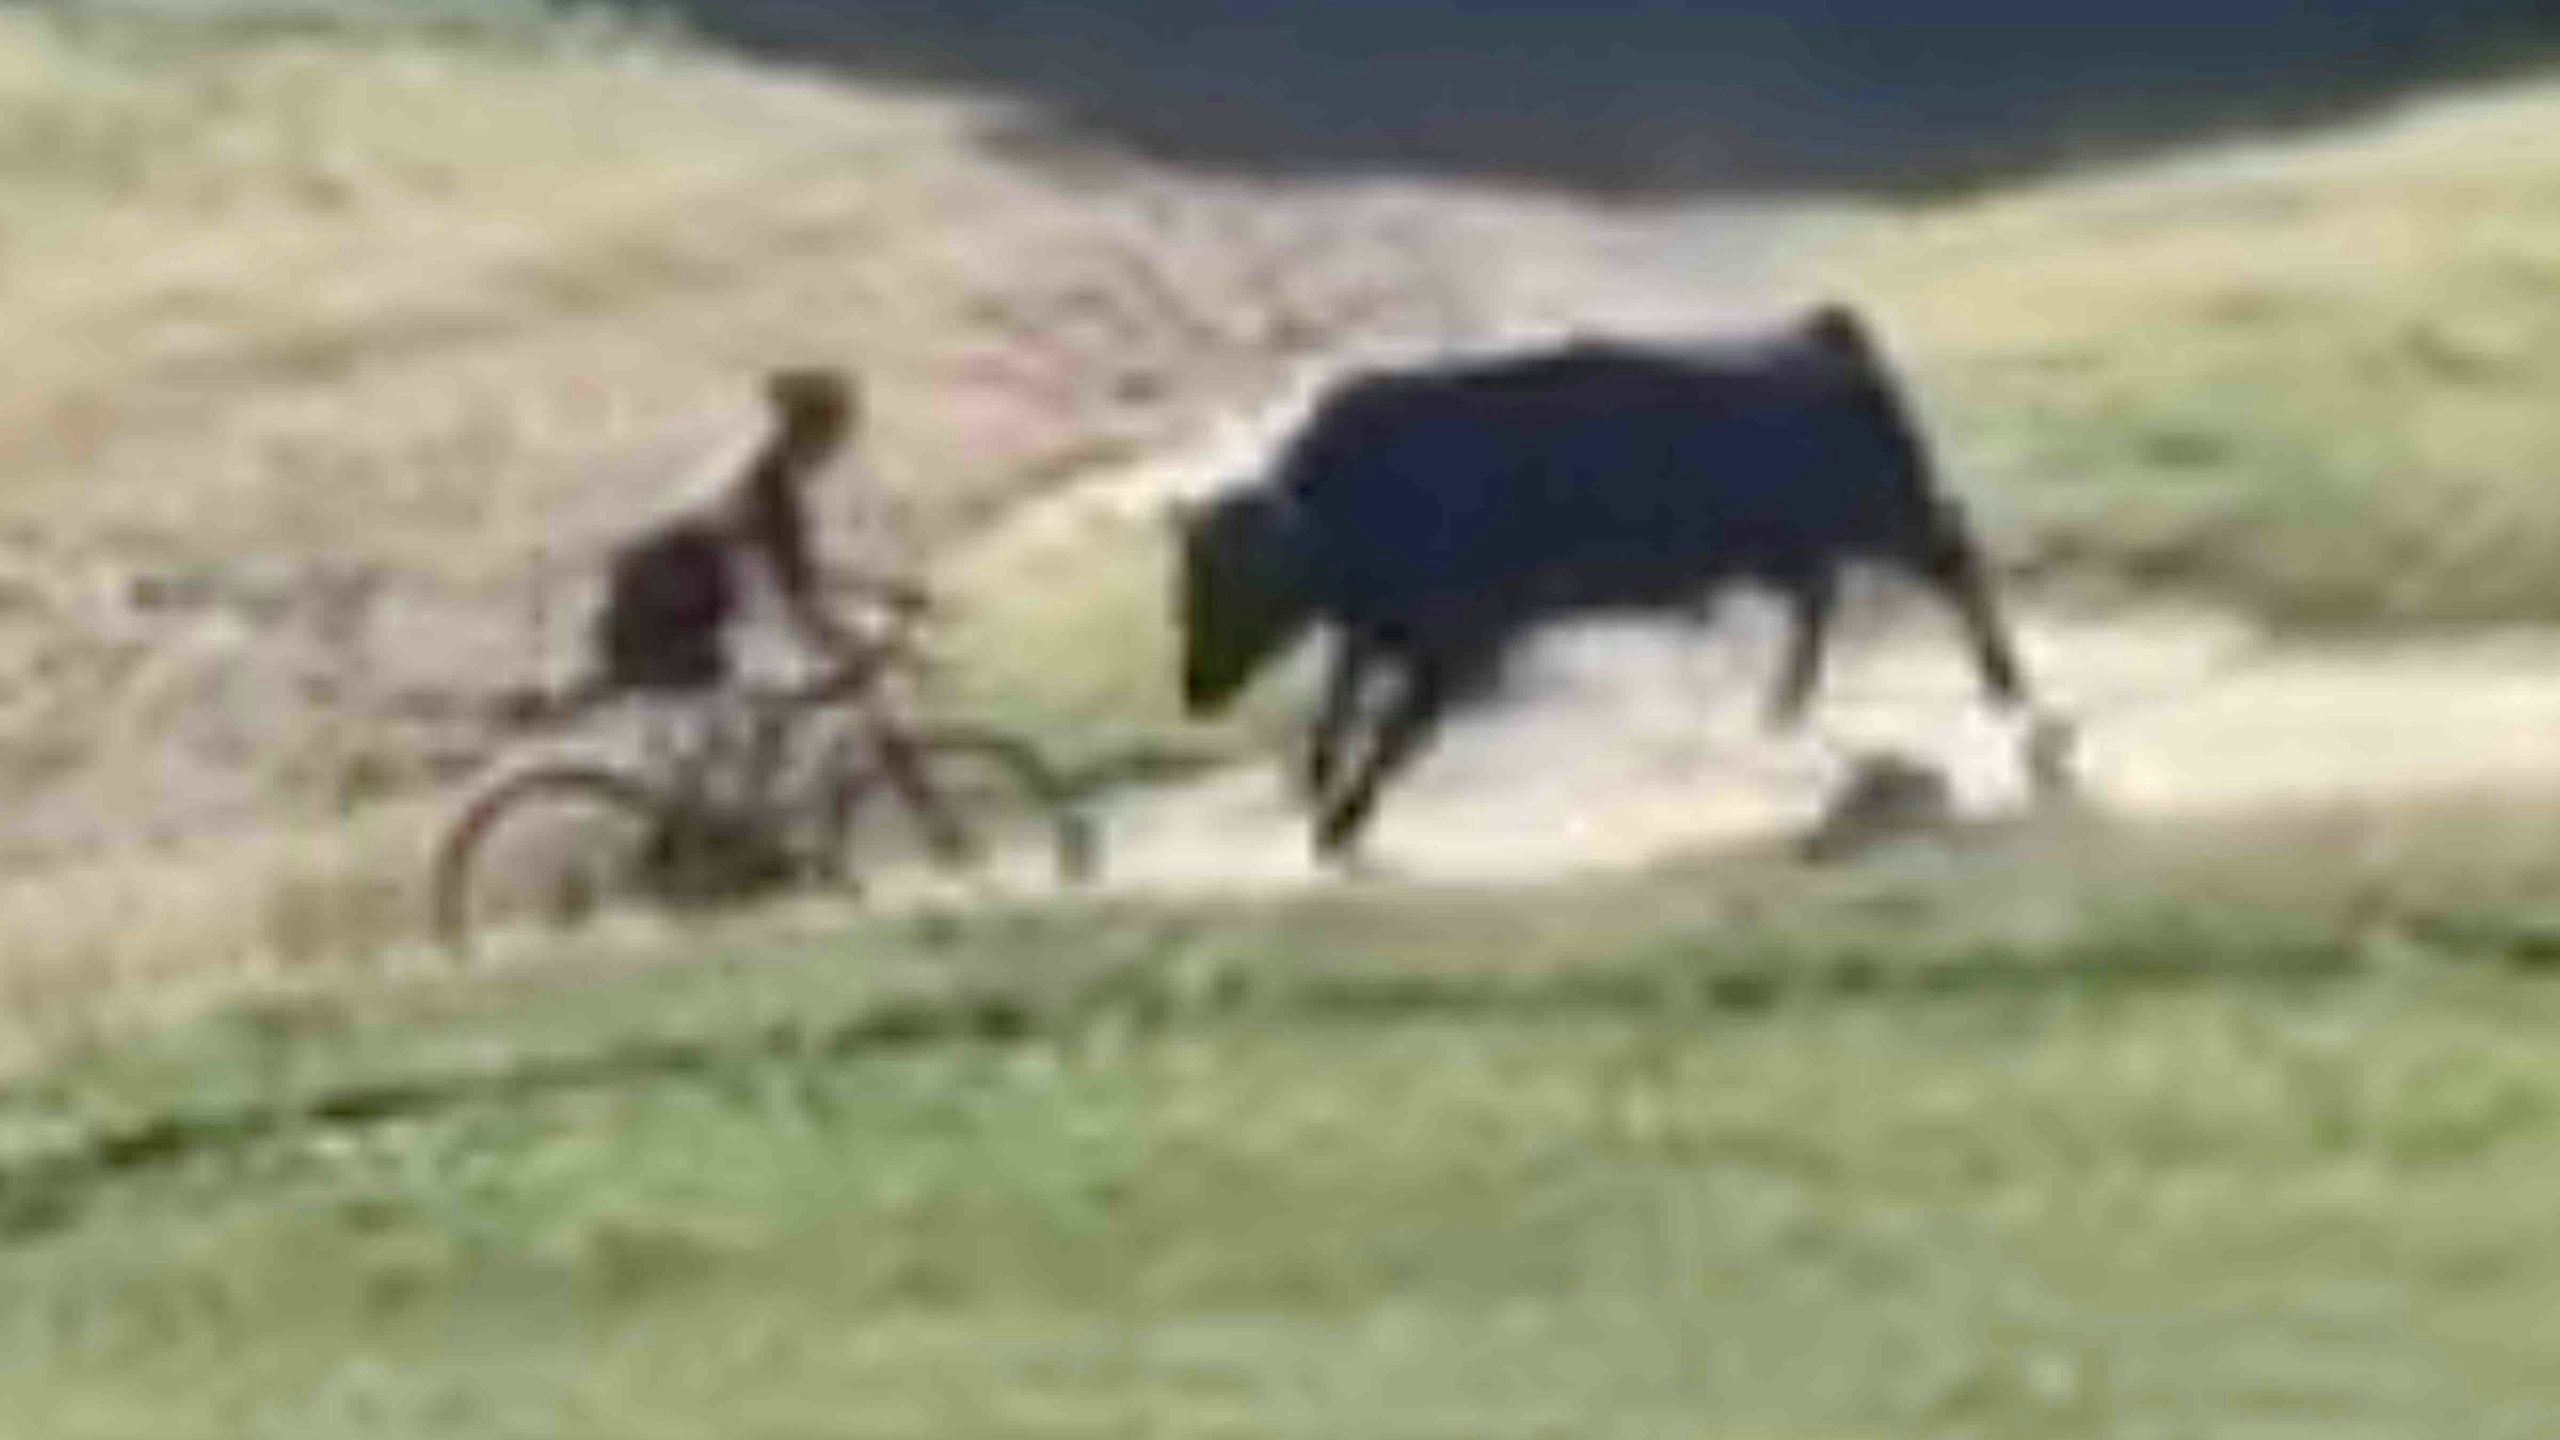 Bull vs bike scaled